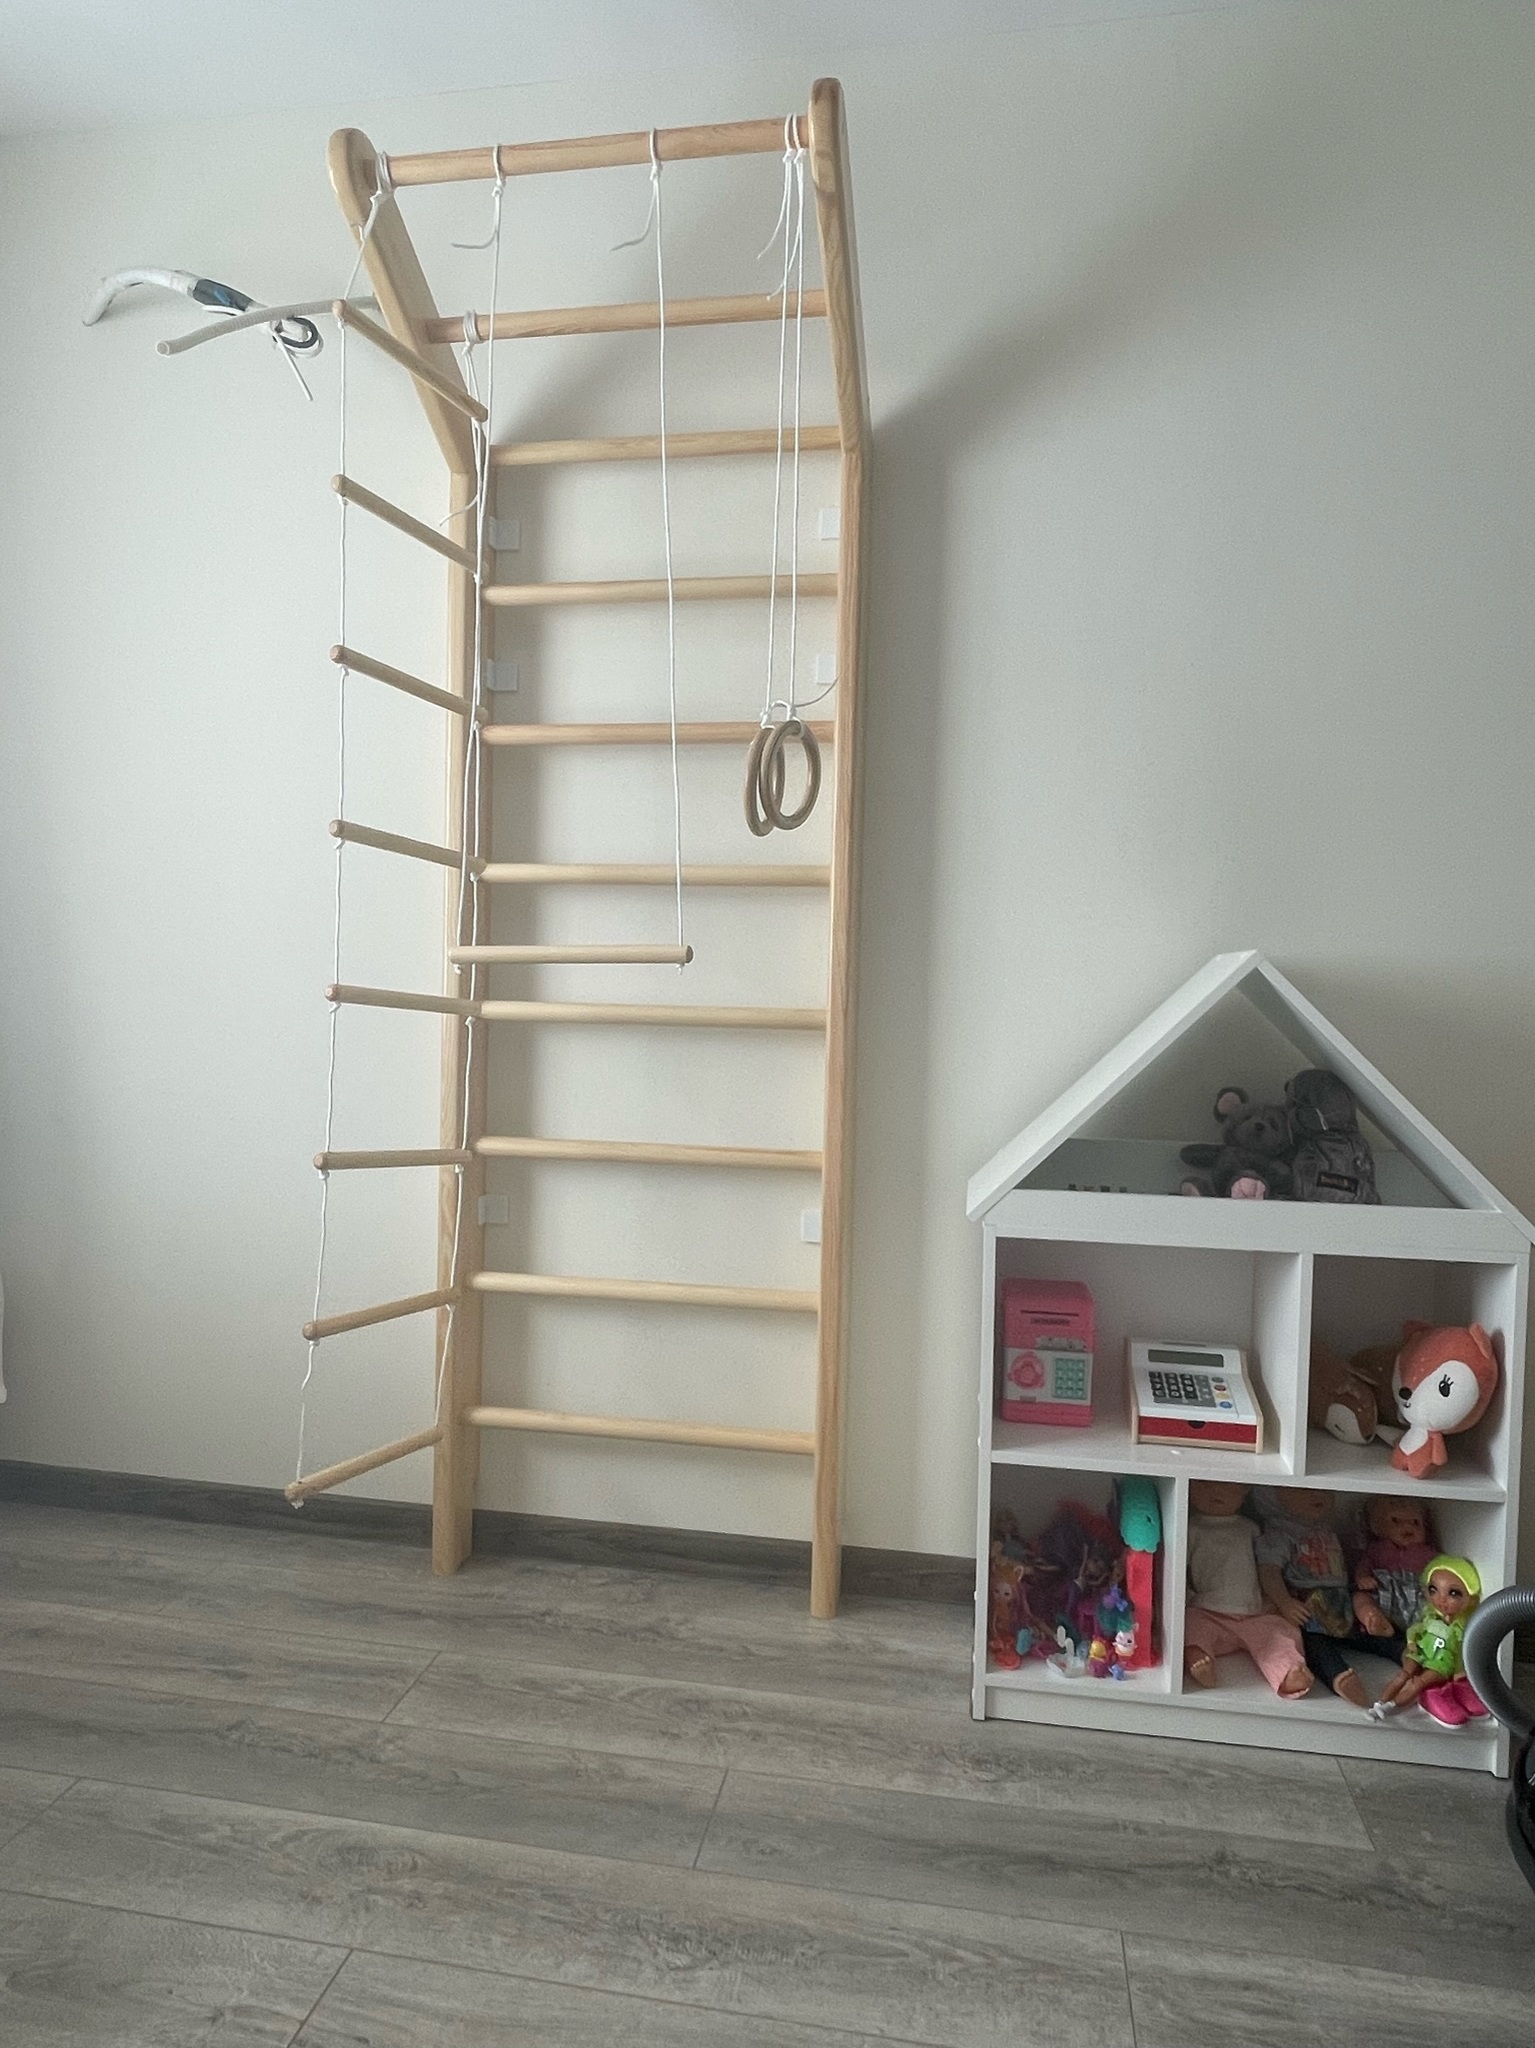 По форме конструкции в каталогах производителей можно найти детские шведские стенки: